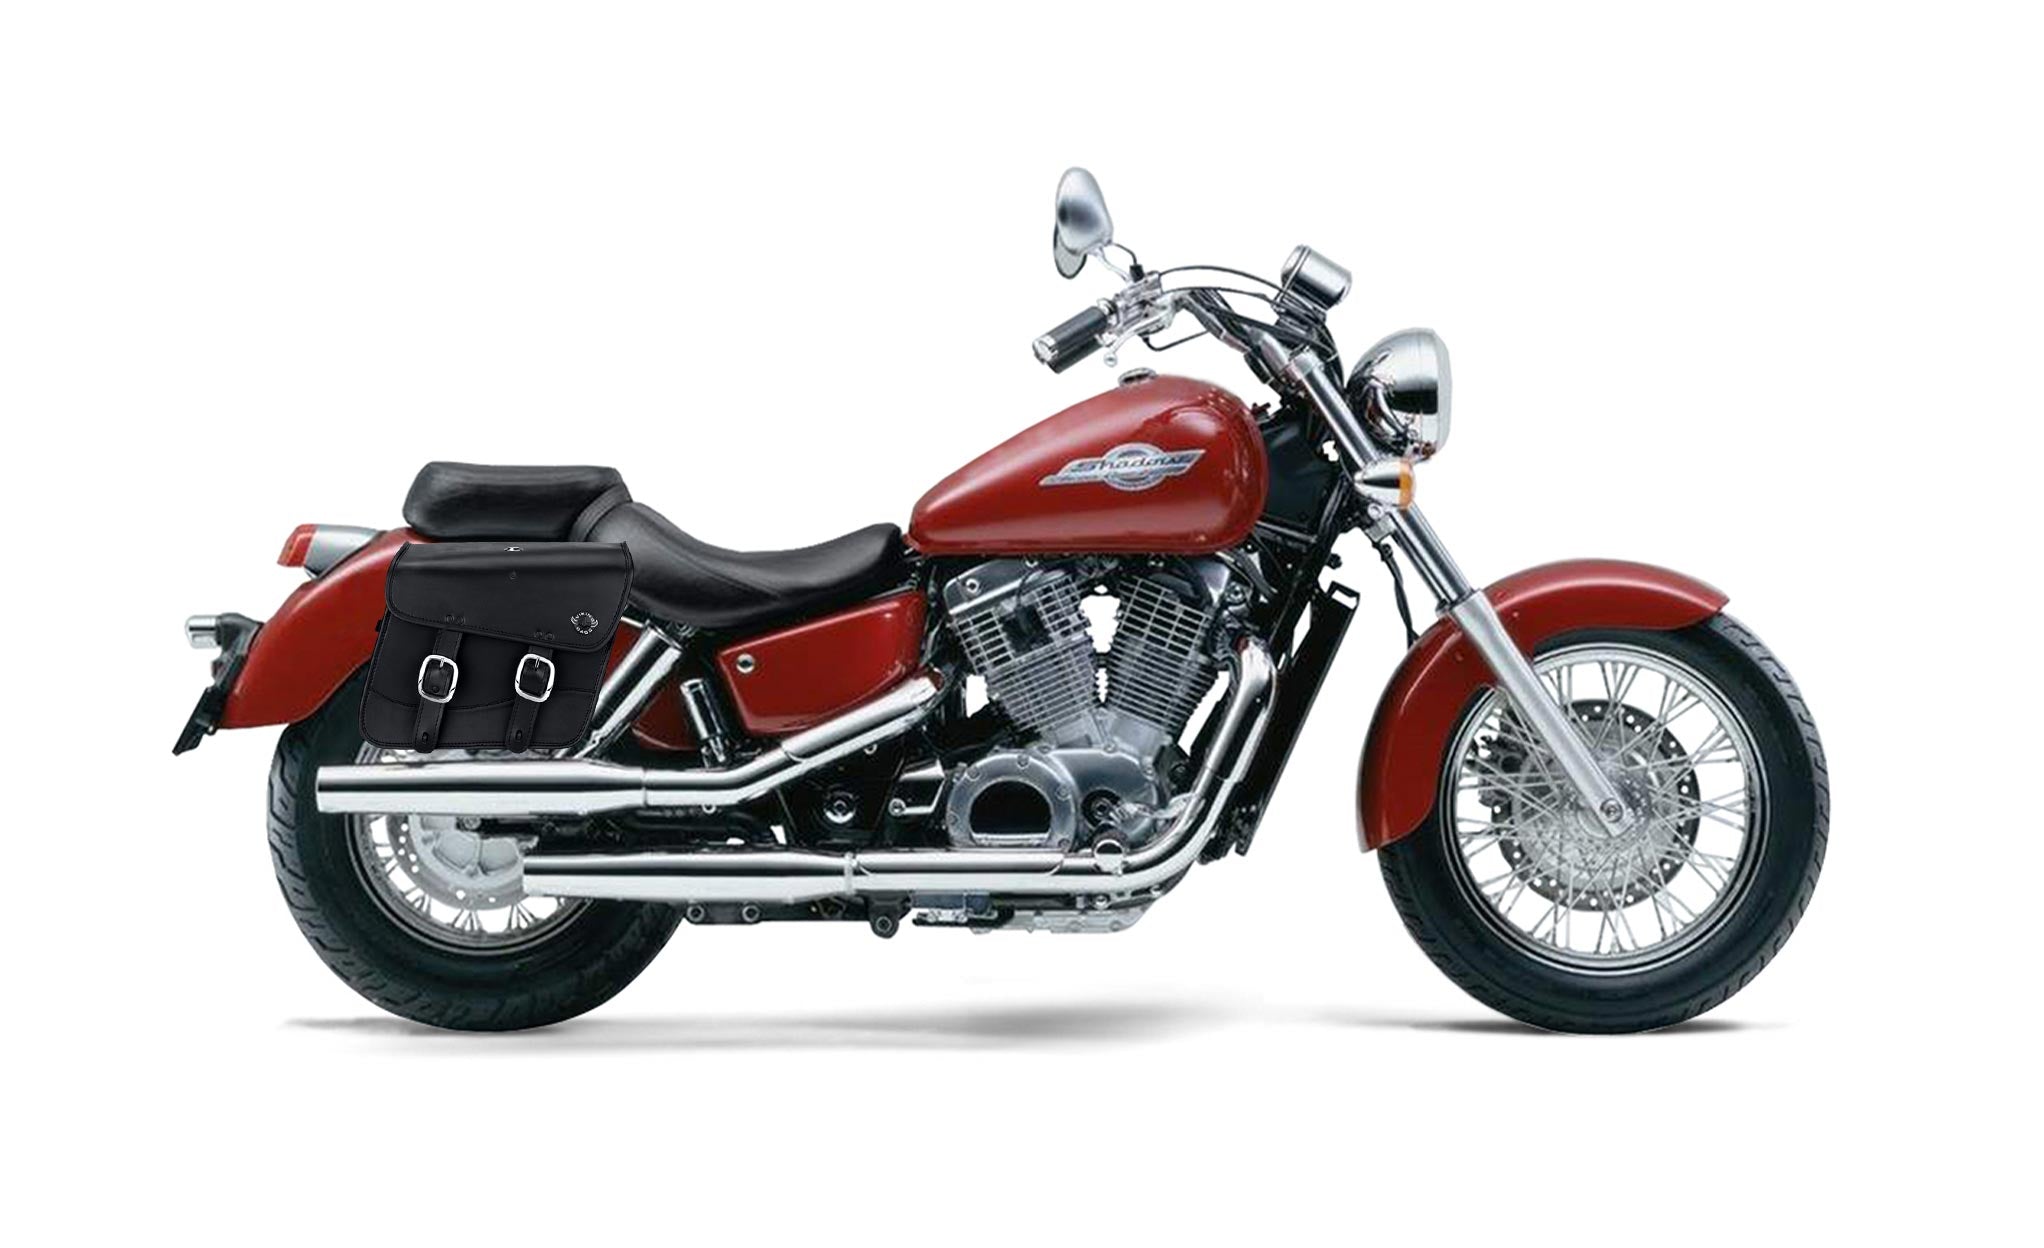 Viking Thor Medium Honda Shadow 1100 Ace Leather Motorcycle Saddlebags on Bike Photo @expand